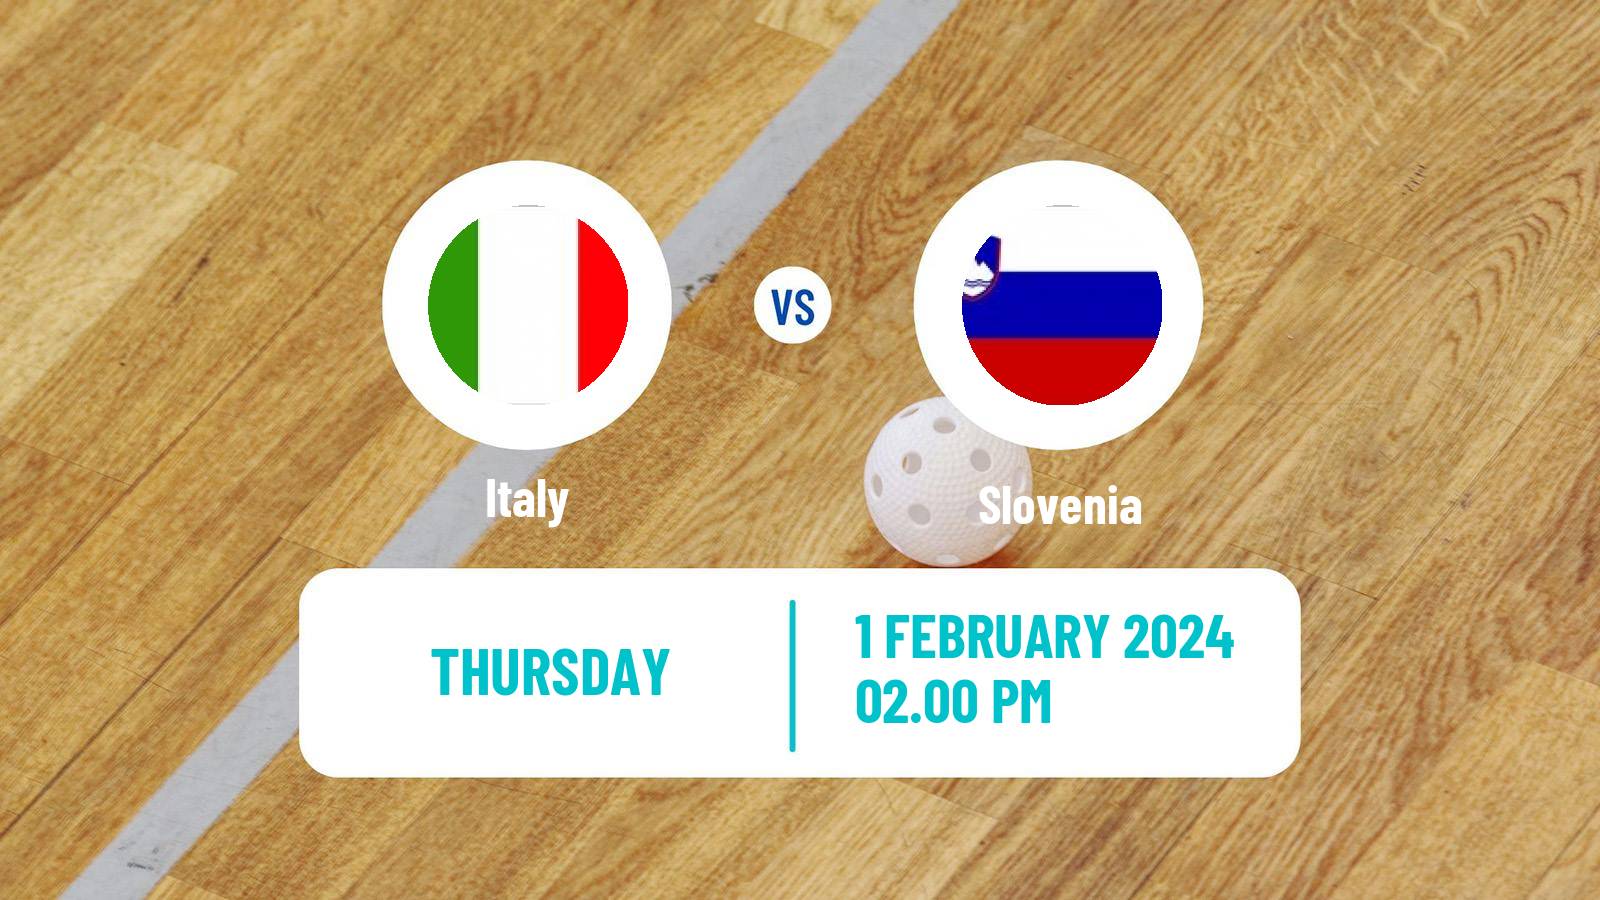 Floorball World Championship Floorball Italy - Slovenia